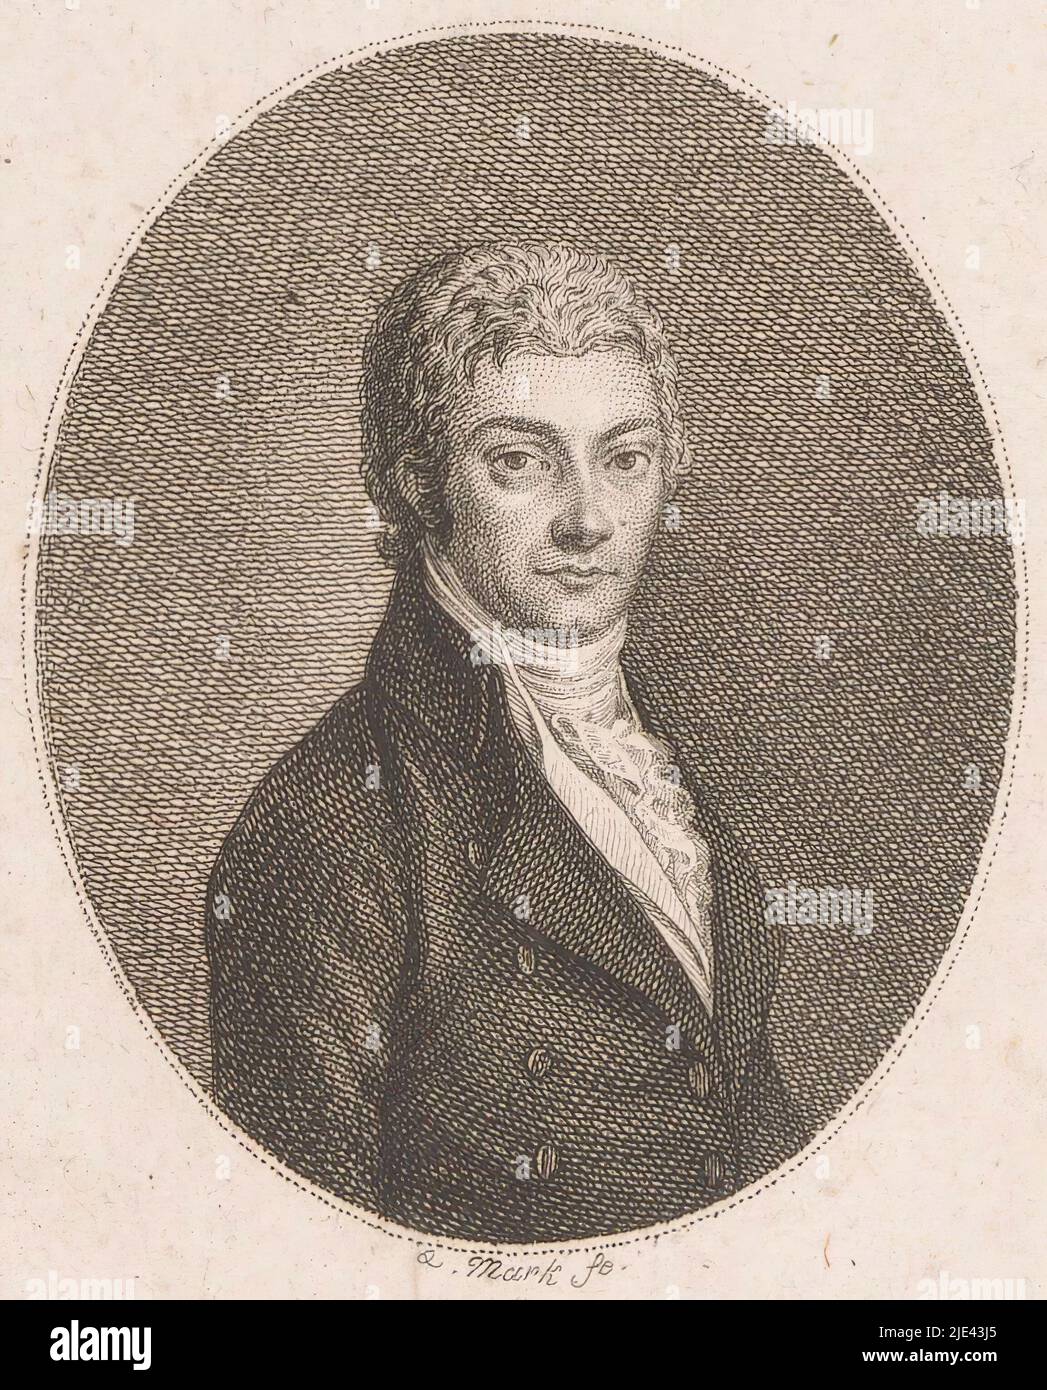 Ritratto di Joseph Franz Appel, Quirin Mark, 1763 - 1811, tipografia: Quirin Mark, (menzionato sull'oggetto), 1763 - 1811, carta, incisione, incisione, h 147 mm - l 103 mm Foto Stock